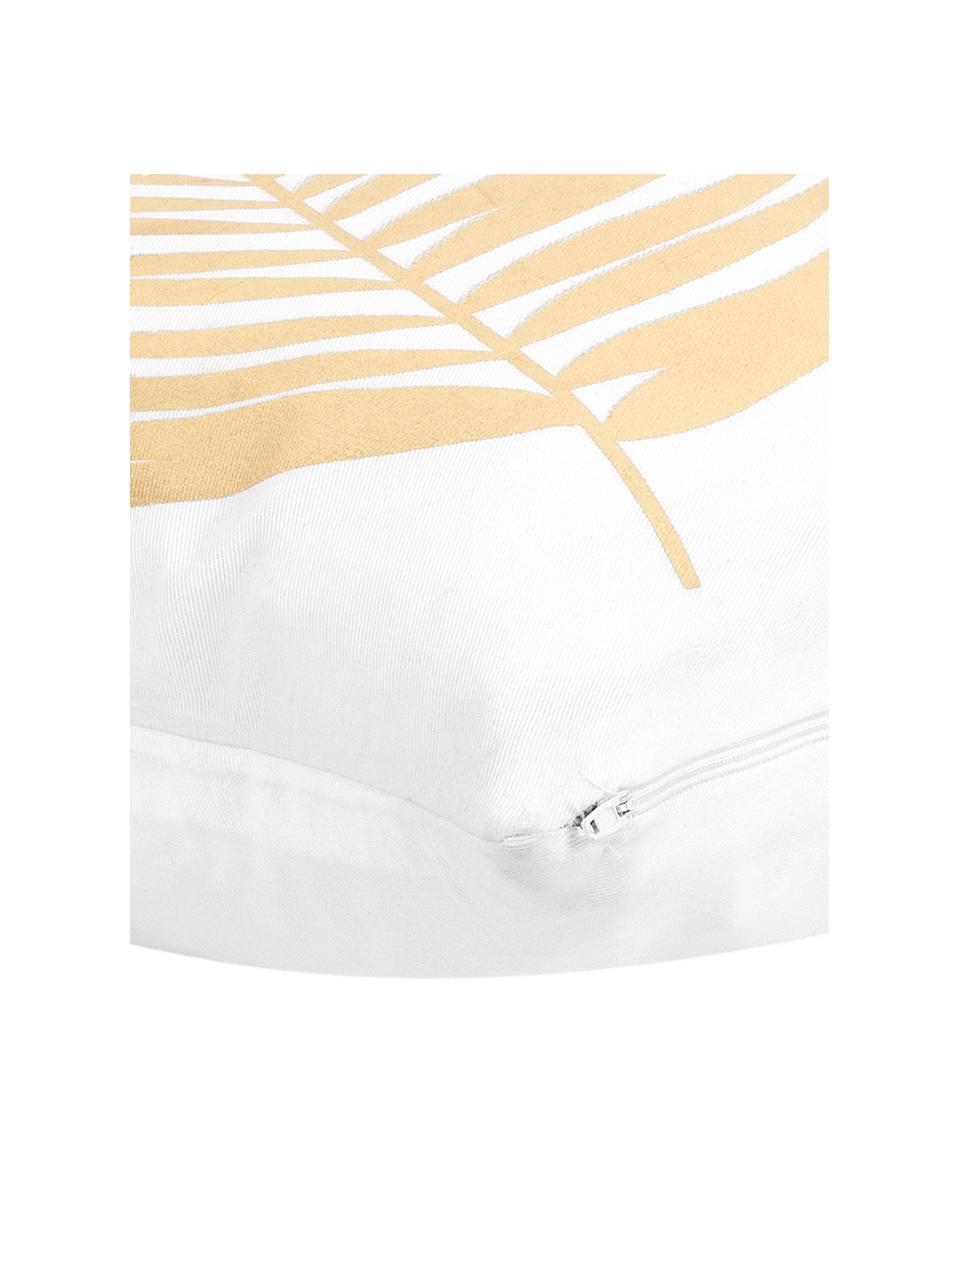 Witte kussenhoes licht met gouden opdruk, 100% katoen, Wit, goudkleurig, B 40 x L 40 cm